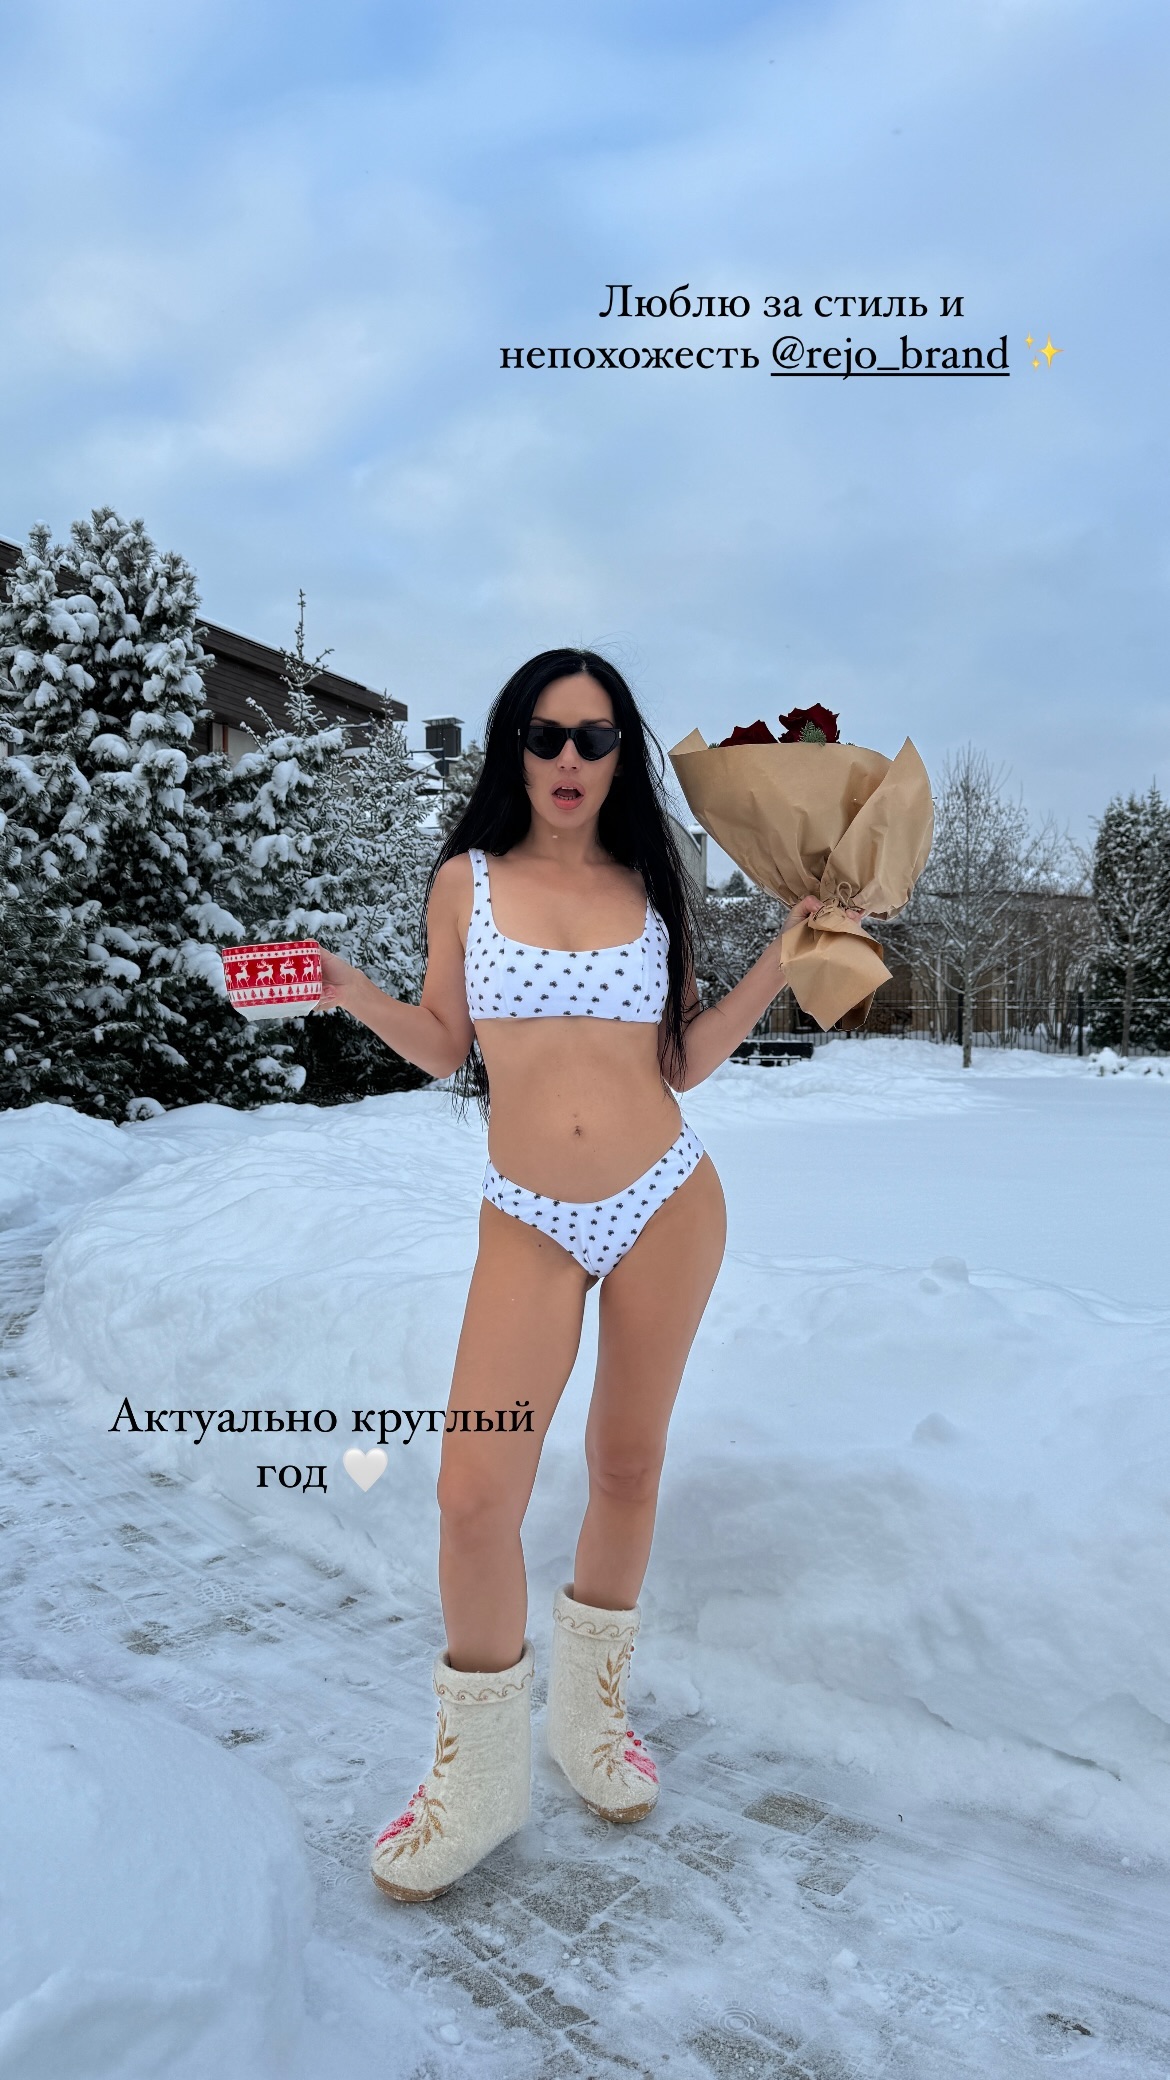 Прогулявшись по сугробам в трусиках, Ольга Серябкина показала, что у неё верхняя одежда и нижнее белье в едином стиле. Топ фото и видео зимних забав Ольги Серябкиной